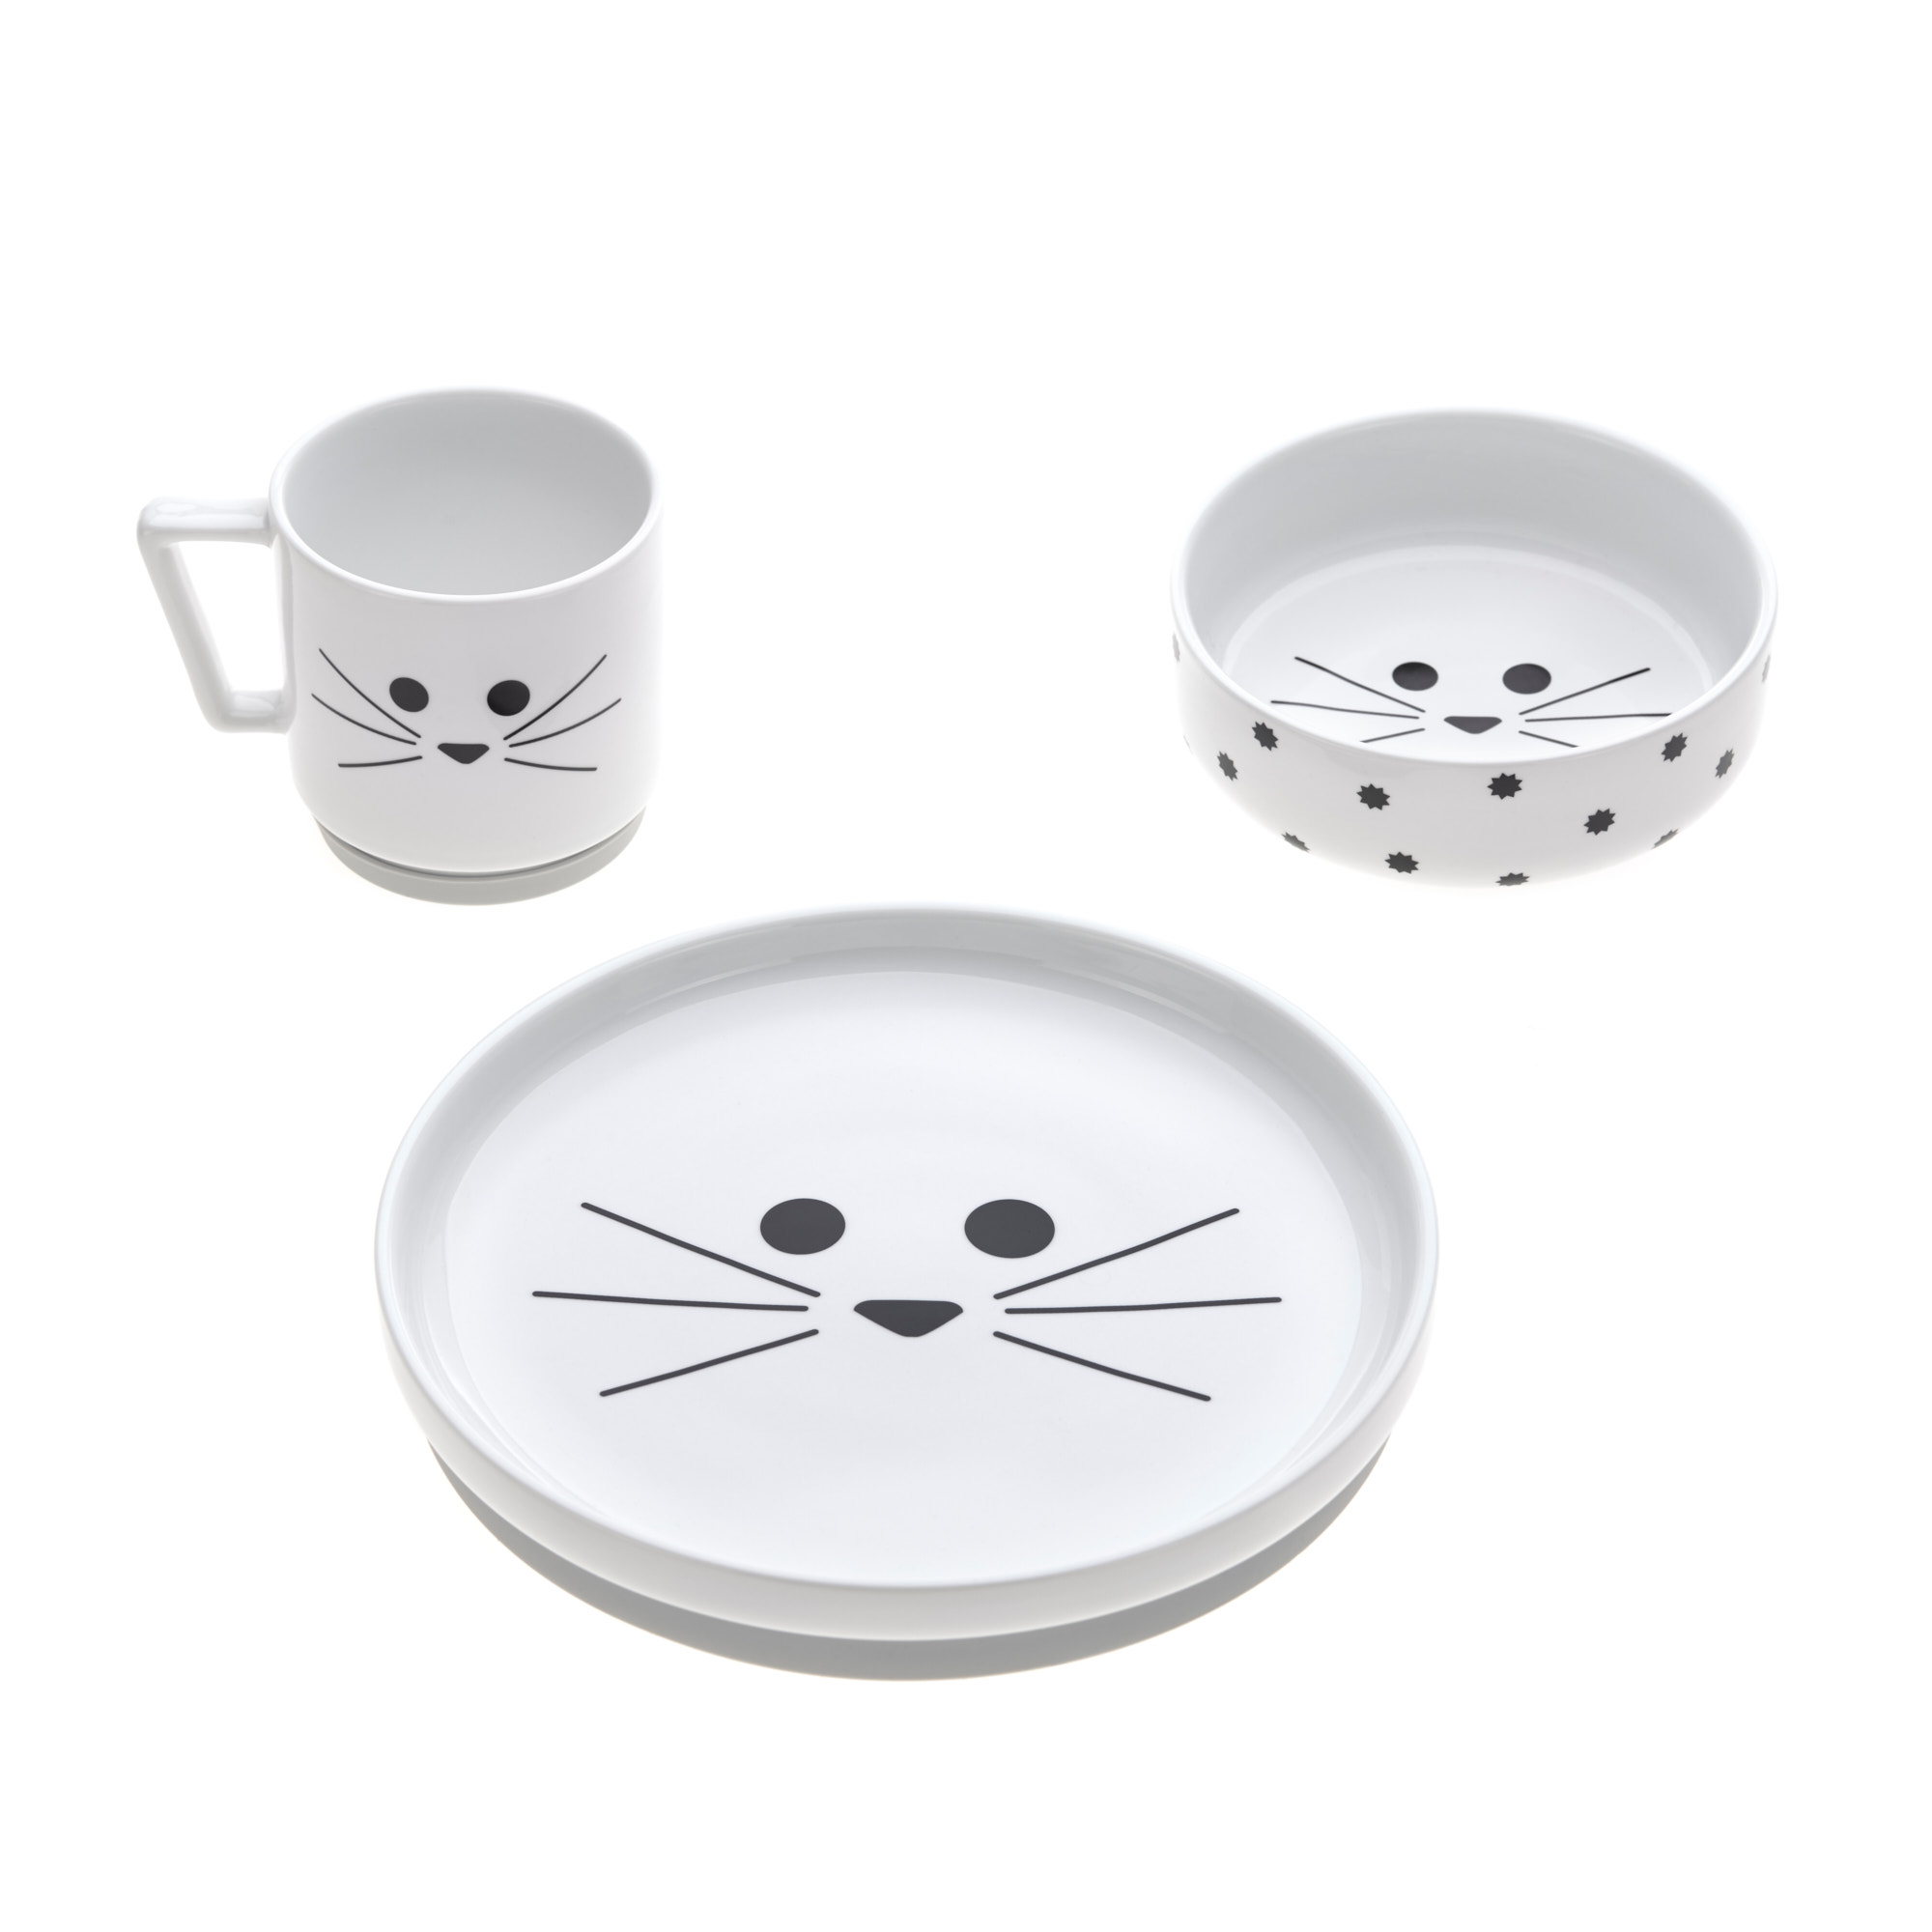 Geschirrset Porzellan/Silikon Little Chums Cat